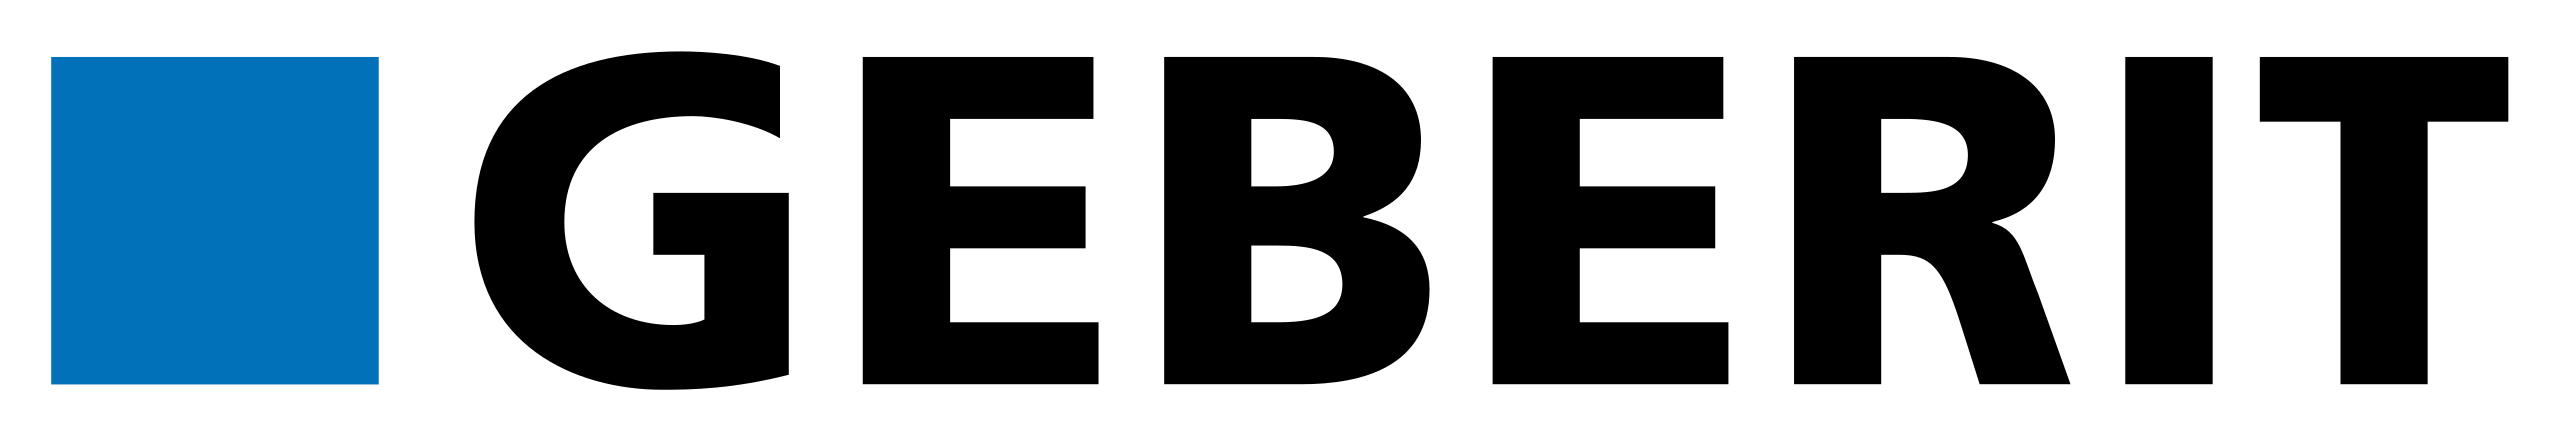 Geberit-Logo.svg-1-1-1-1-1-1-1-1.png